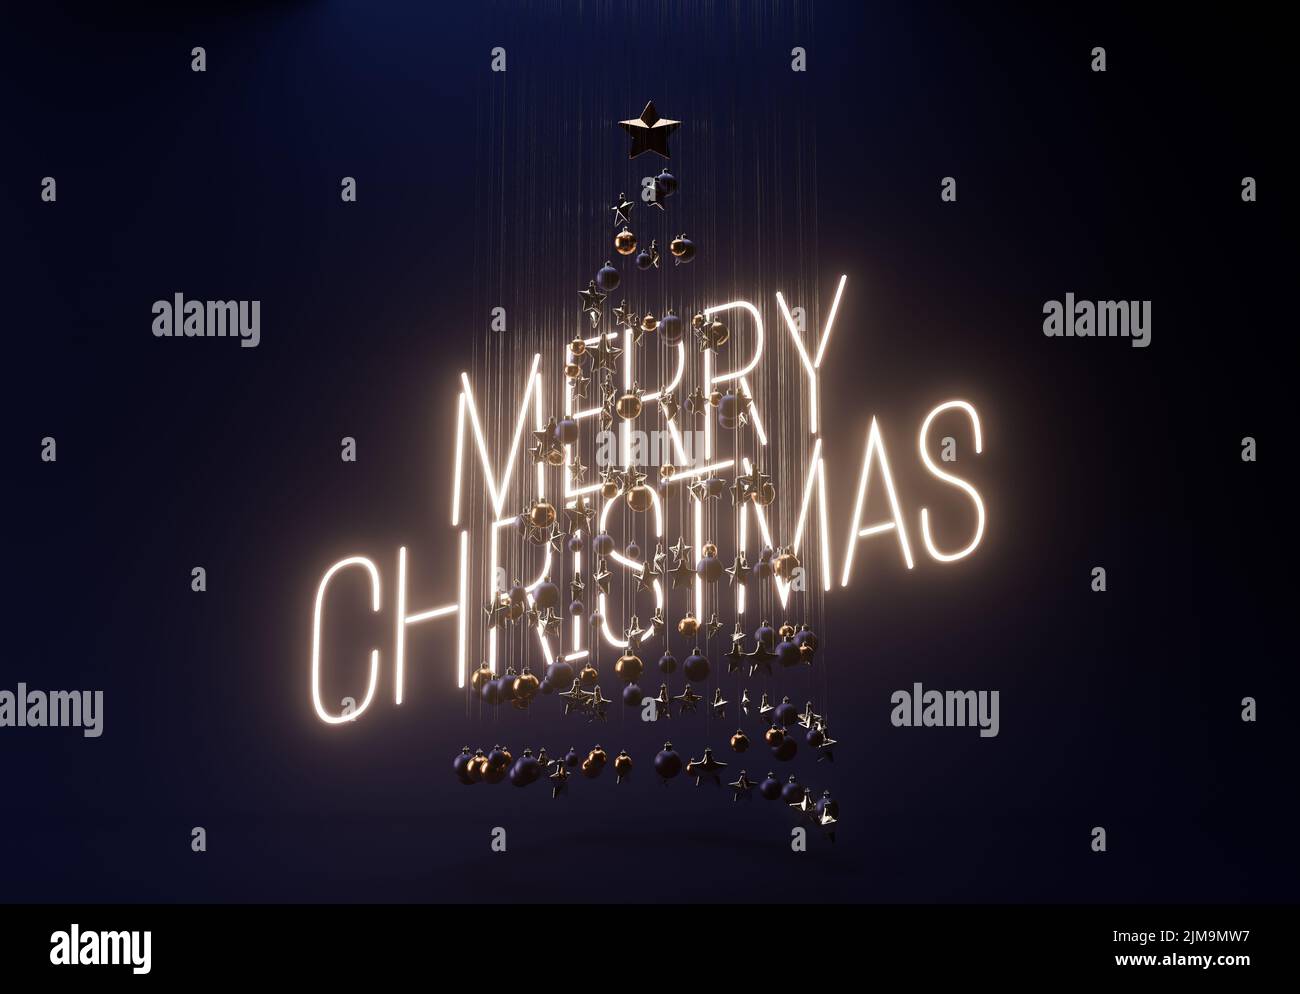 Un concepto de una colección de adornos de navidad colgantes haciendo la forma de un árbol retroiluminado por un signo de neón diciendo Feliz navidad - 3D render Foto de stock